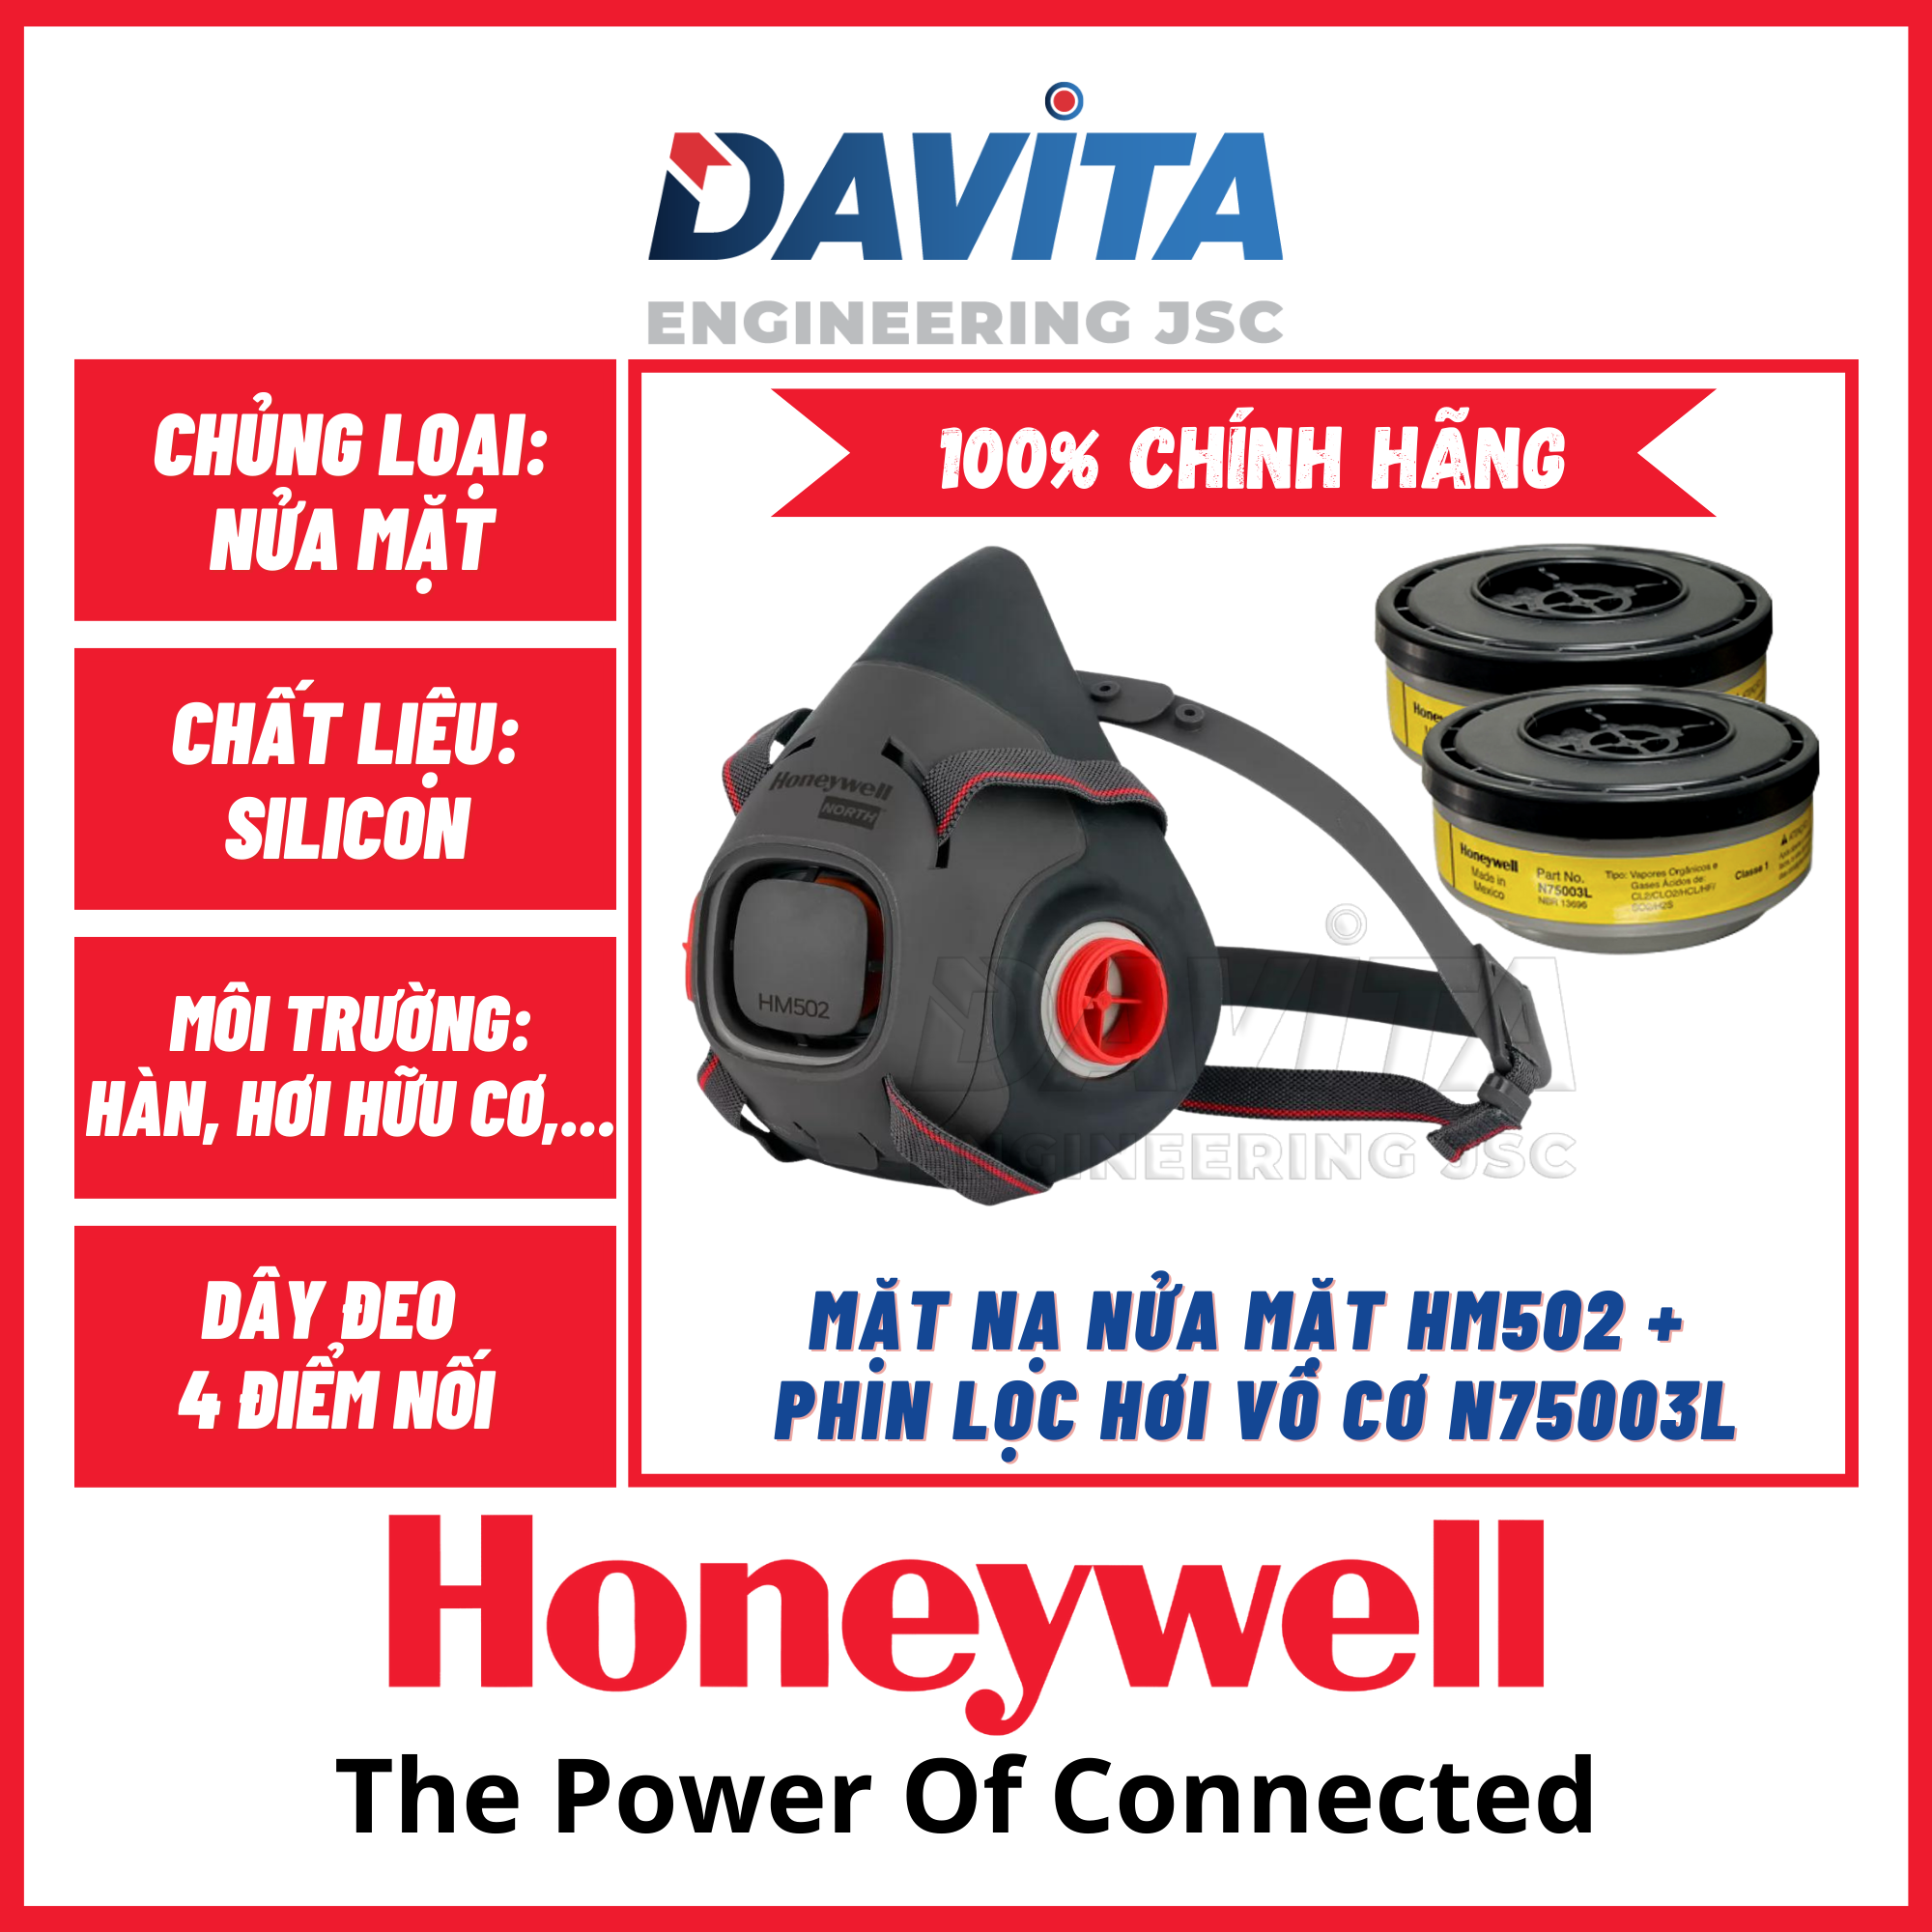 Mặt nạ nửa mặt bảo vệ hô hấp Honeywell HM502 đã bao gồm phin lọc hơi vô cơ N75003L